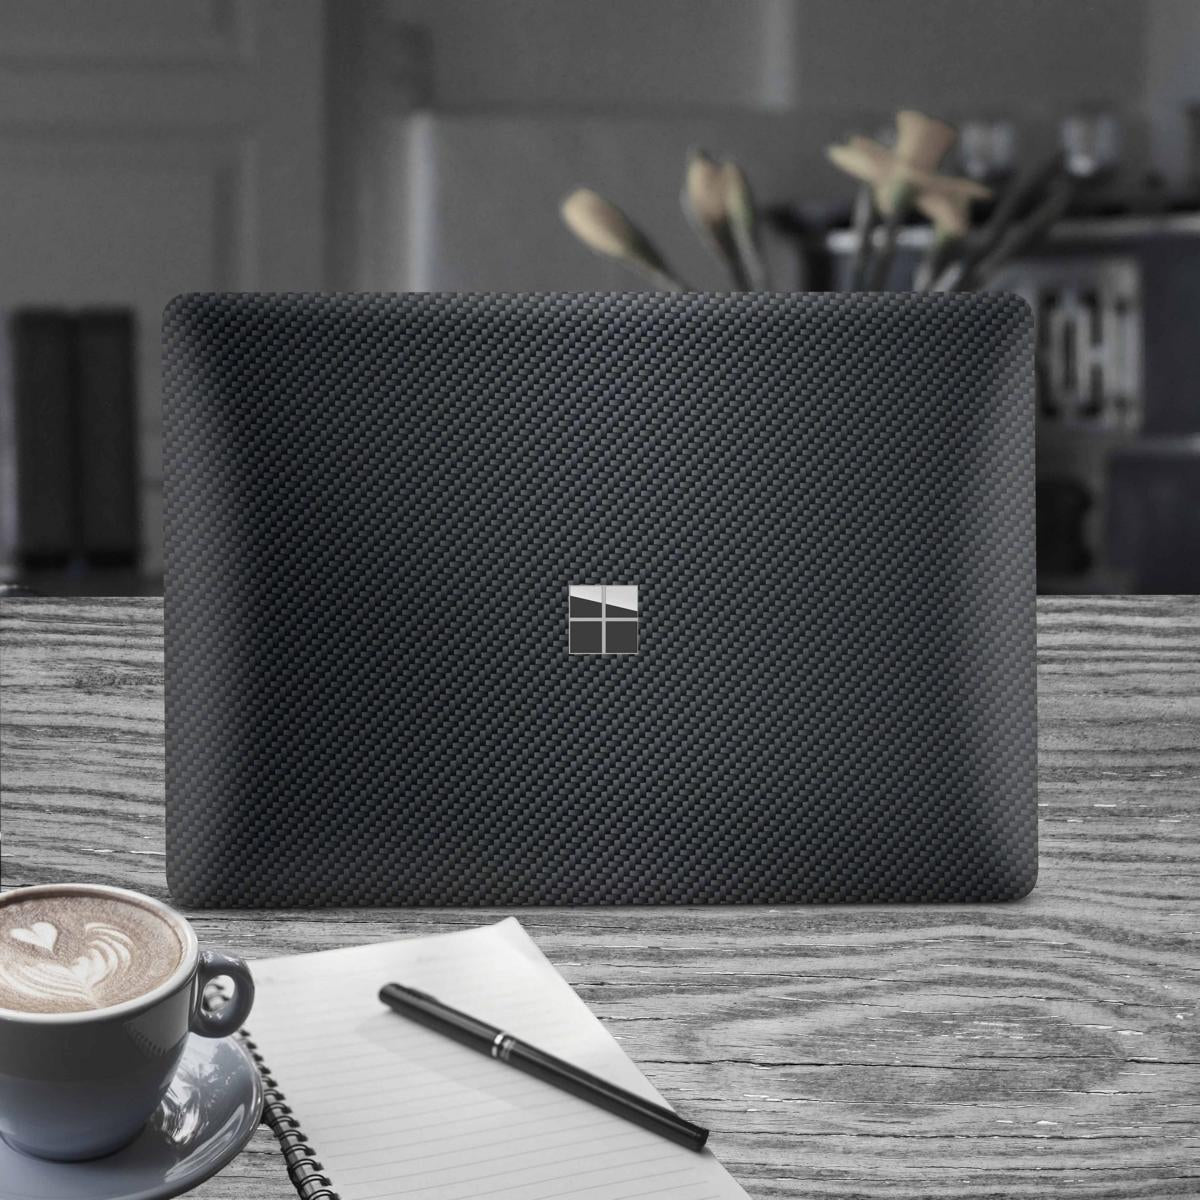 Microsoft Surface Laptop 3 4 5 Skin 15" Premium Vinylfolie Kratzerschutz Design Carbon Elektronik-Sticker & -Aufkleber Skins4u   